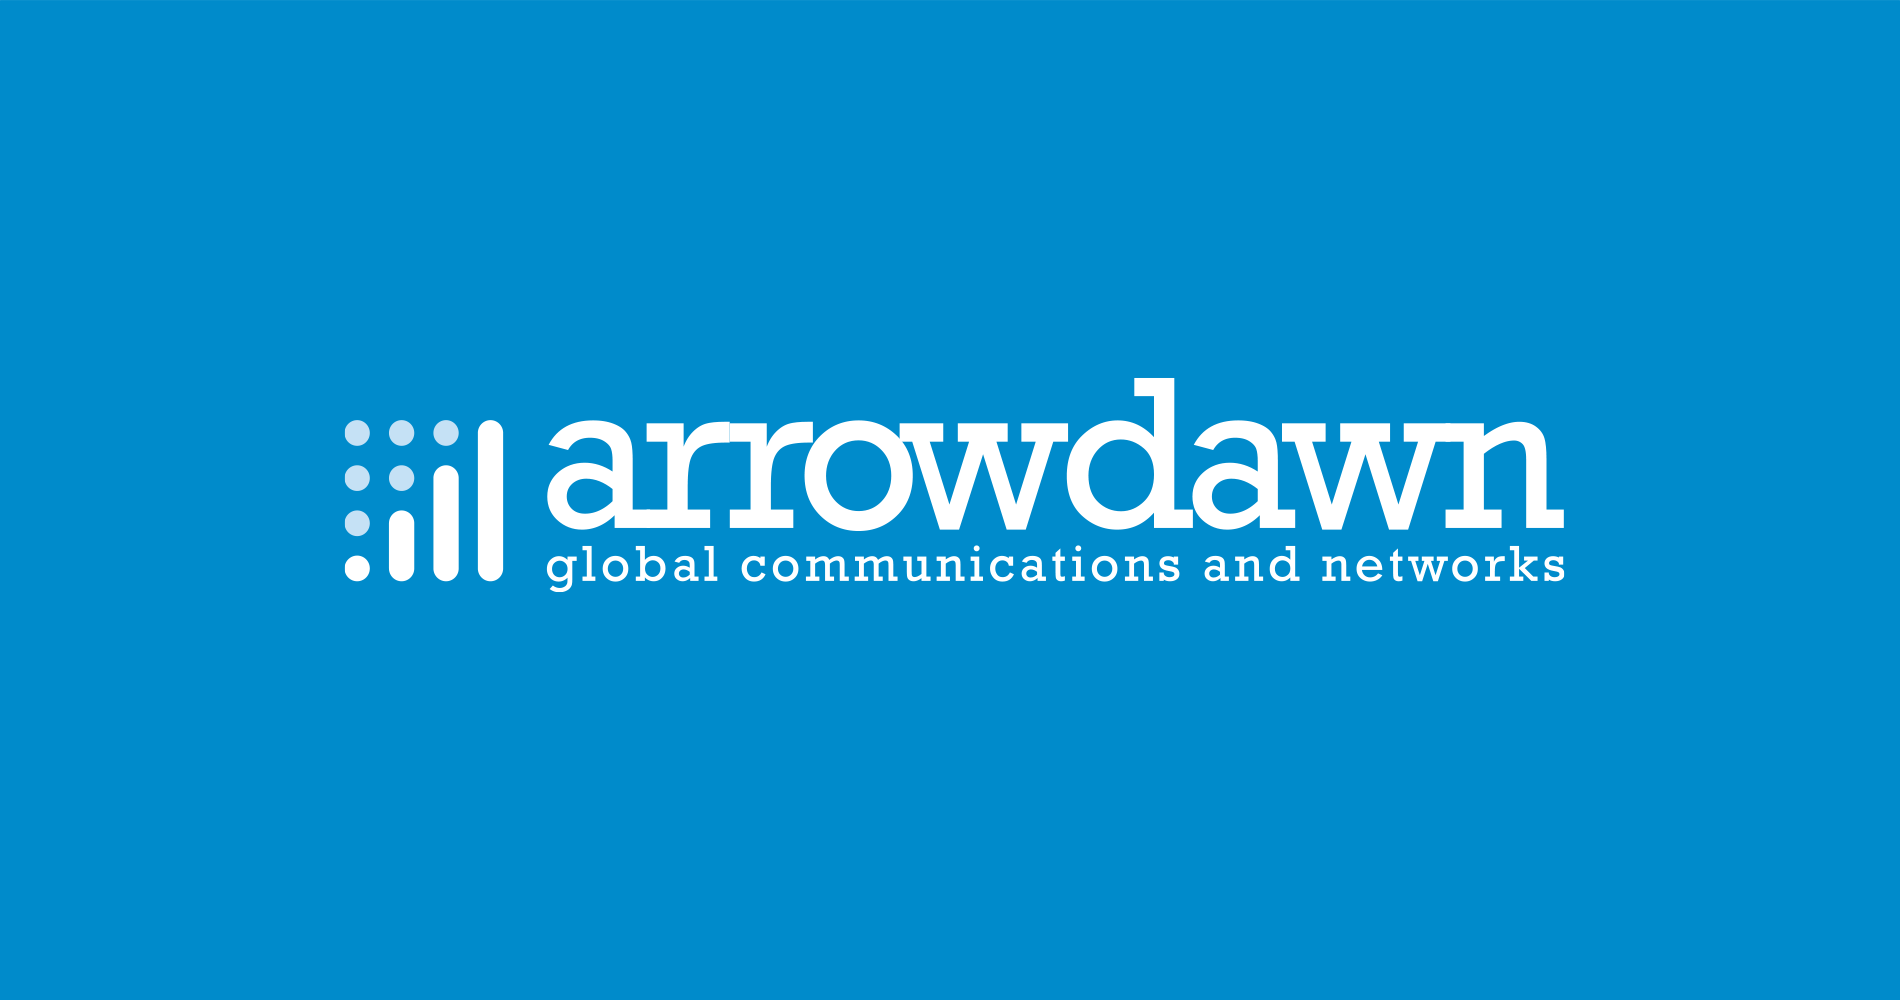 Arrowdawn